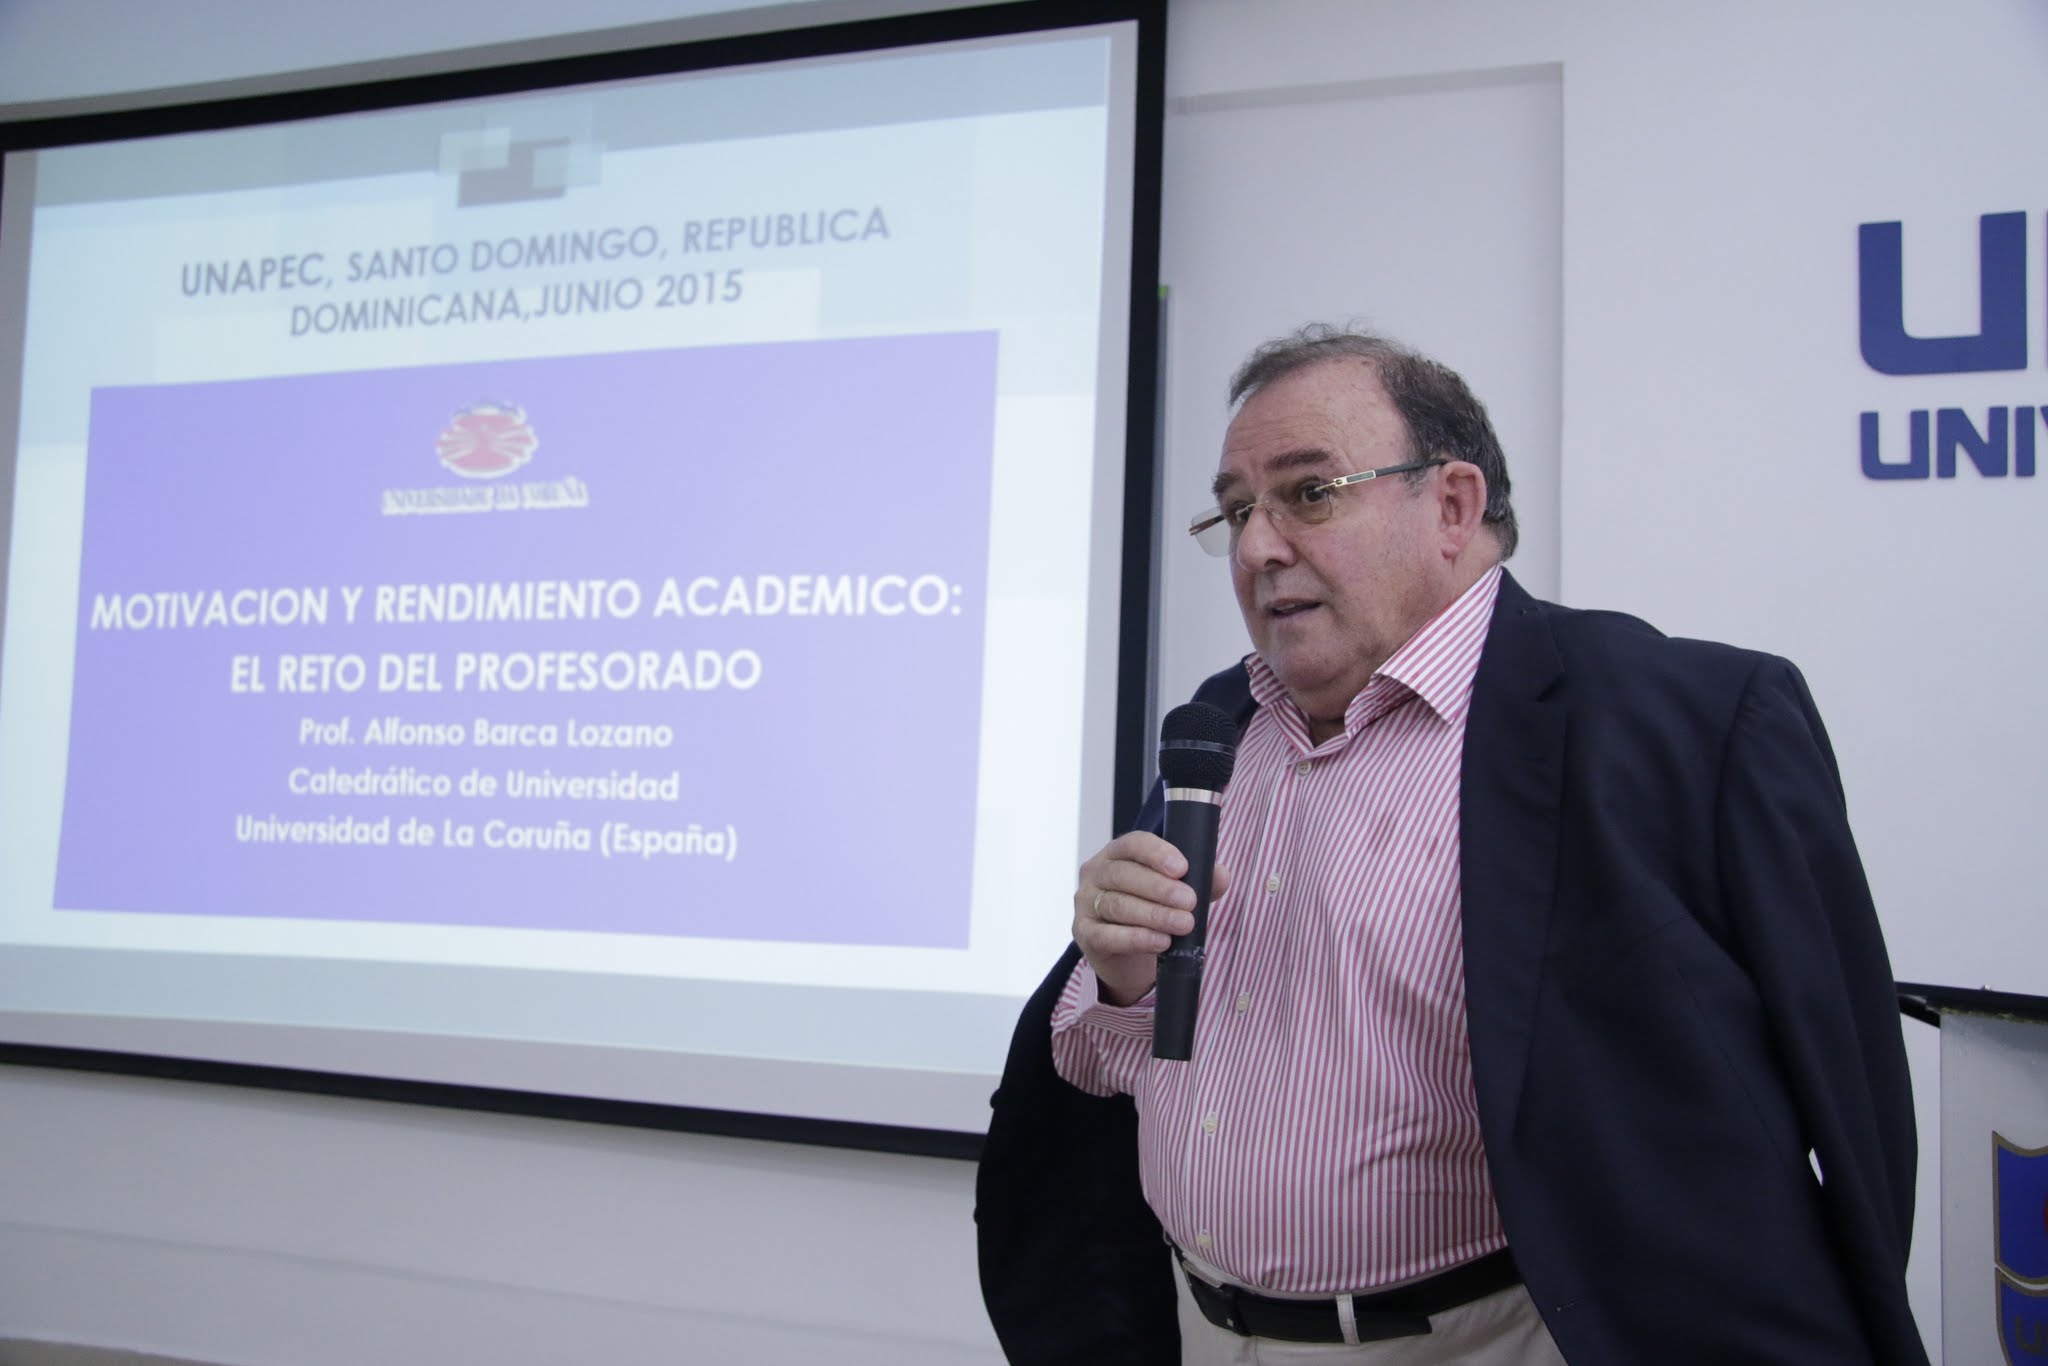 Alfonso Barca, Psicólogo, Investigador y catedrático